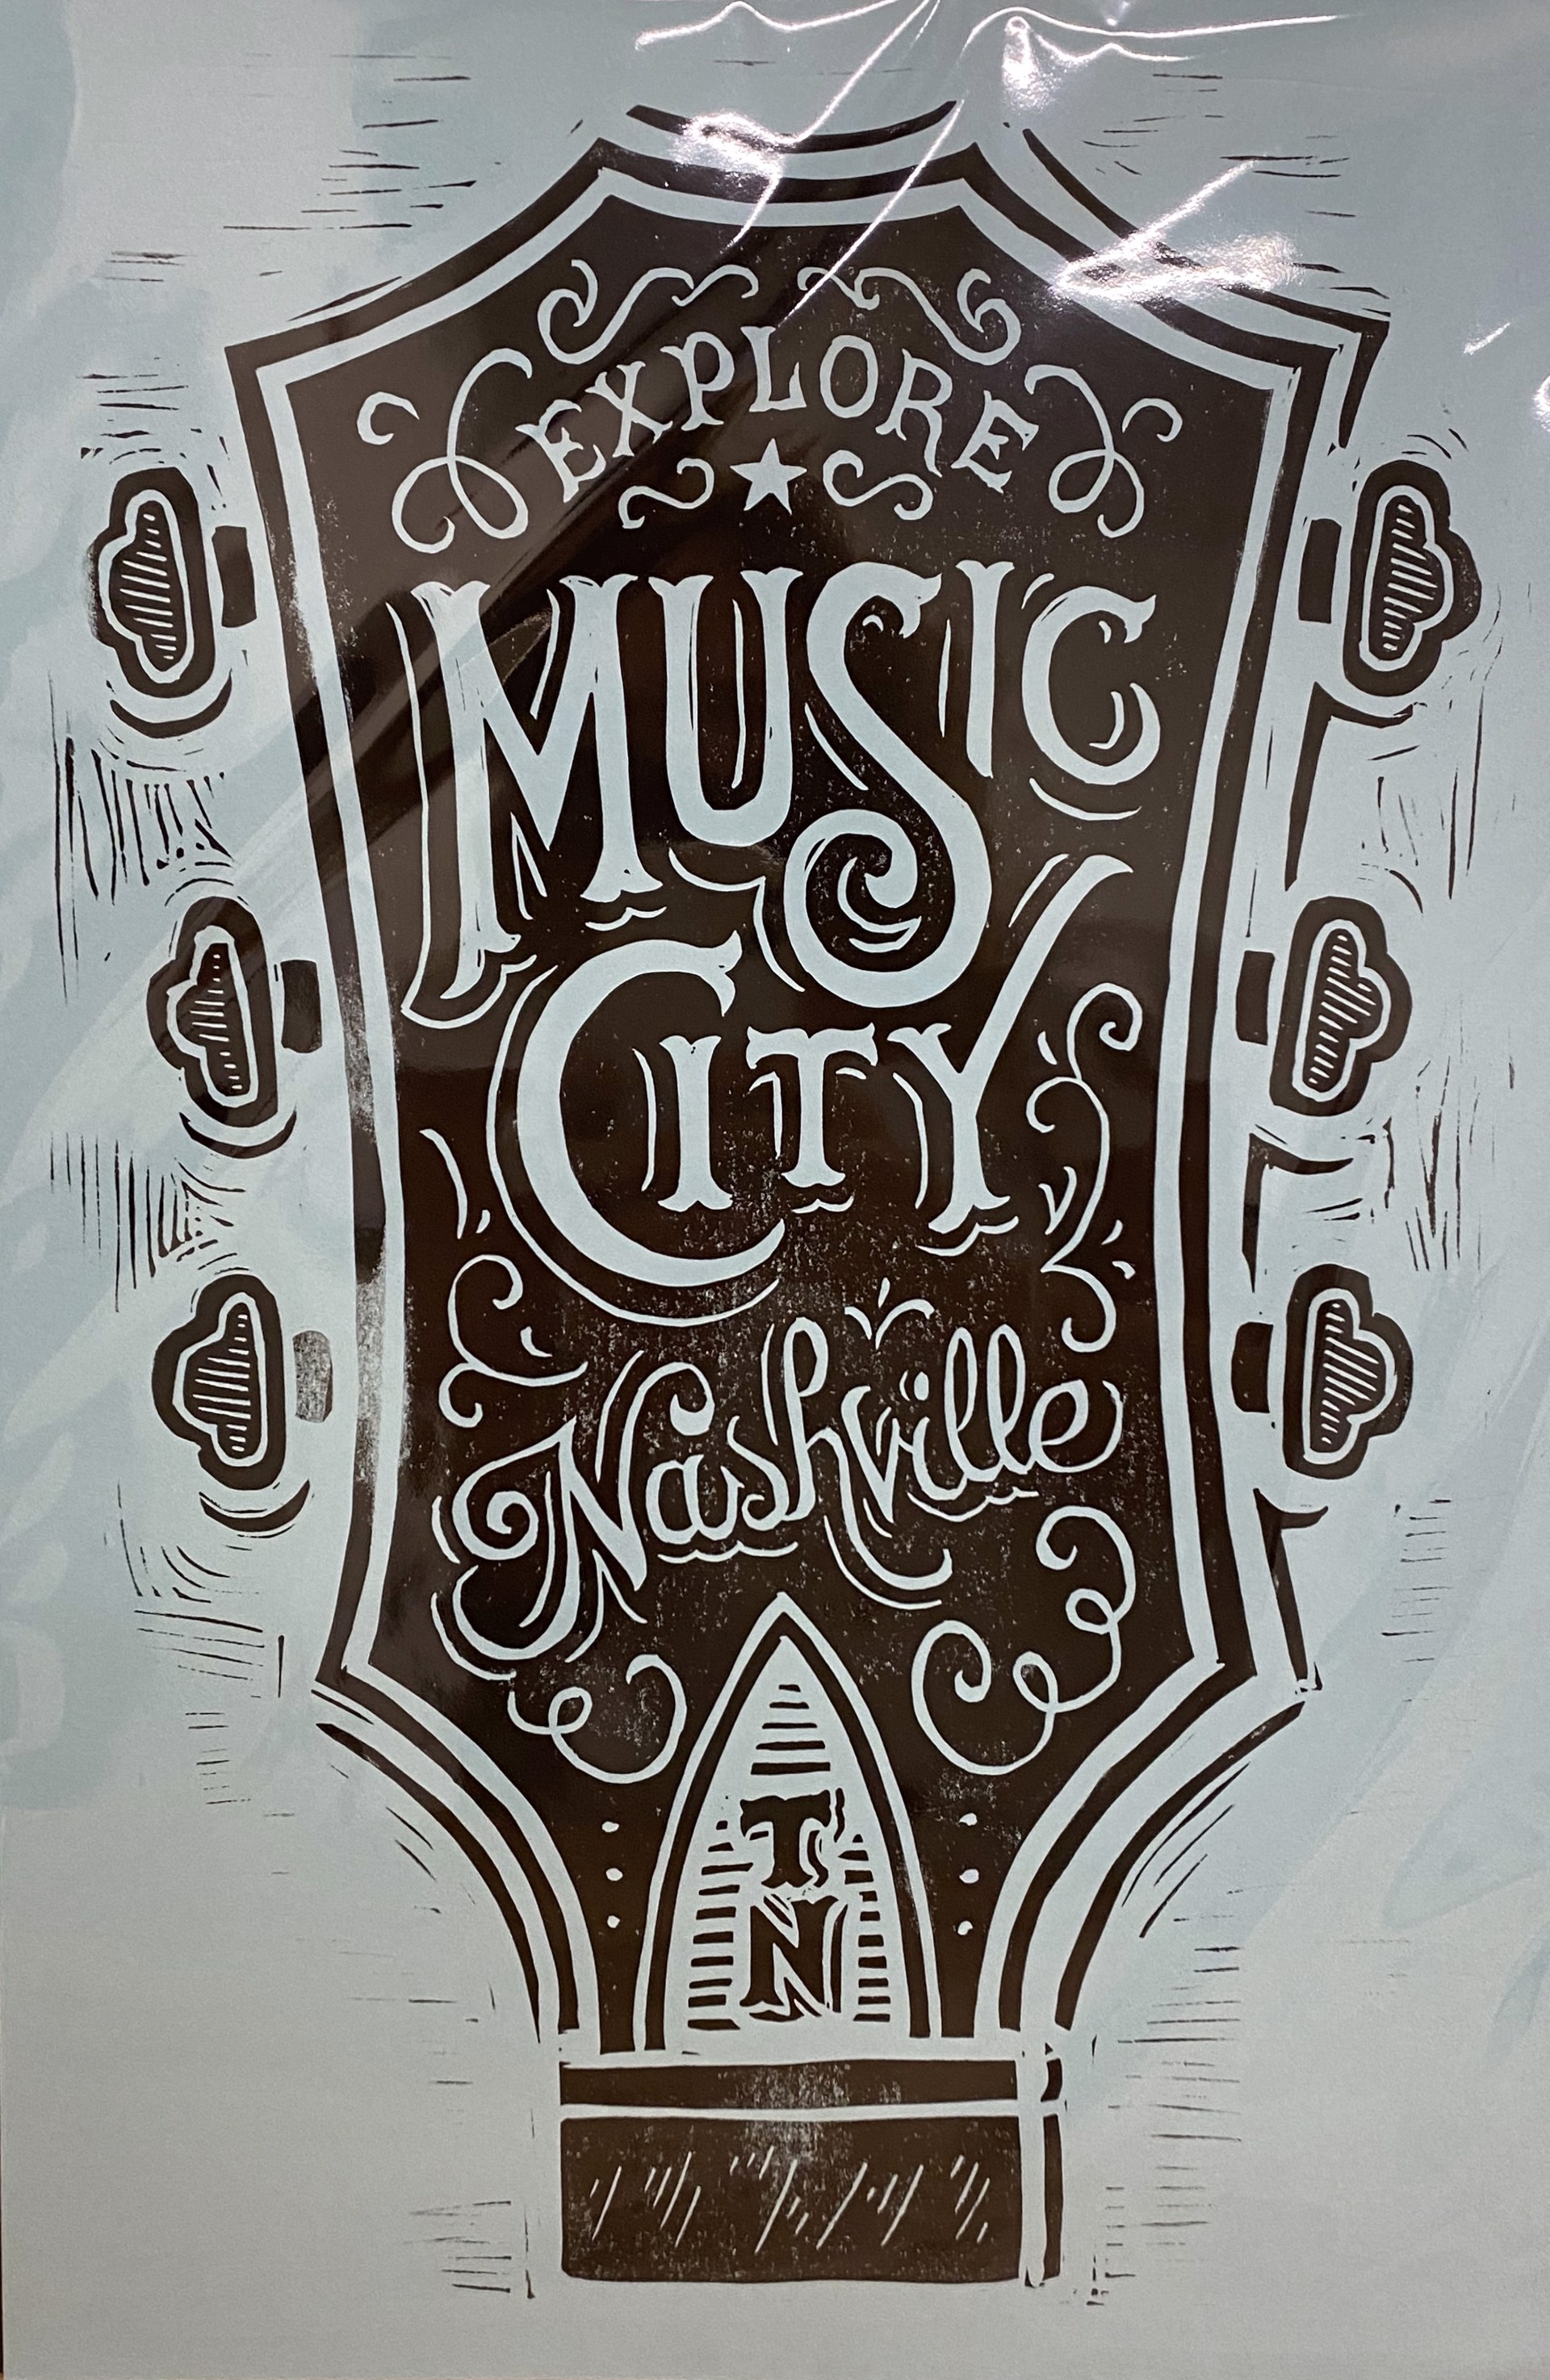 Explore Music City (Blue) by Derrick Castle